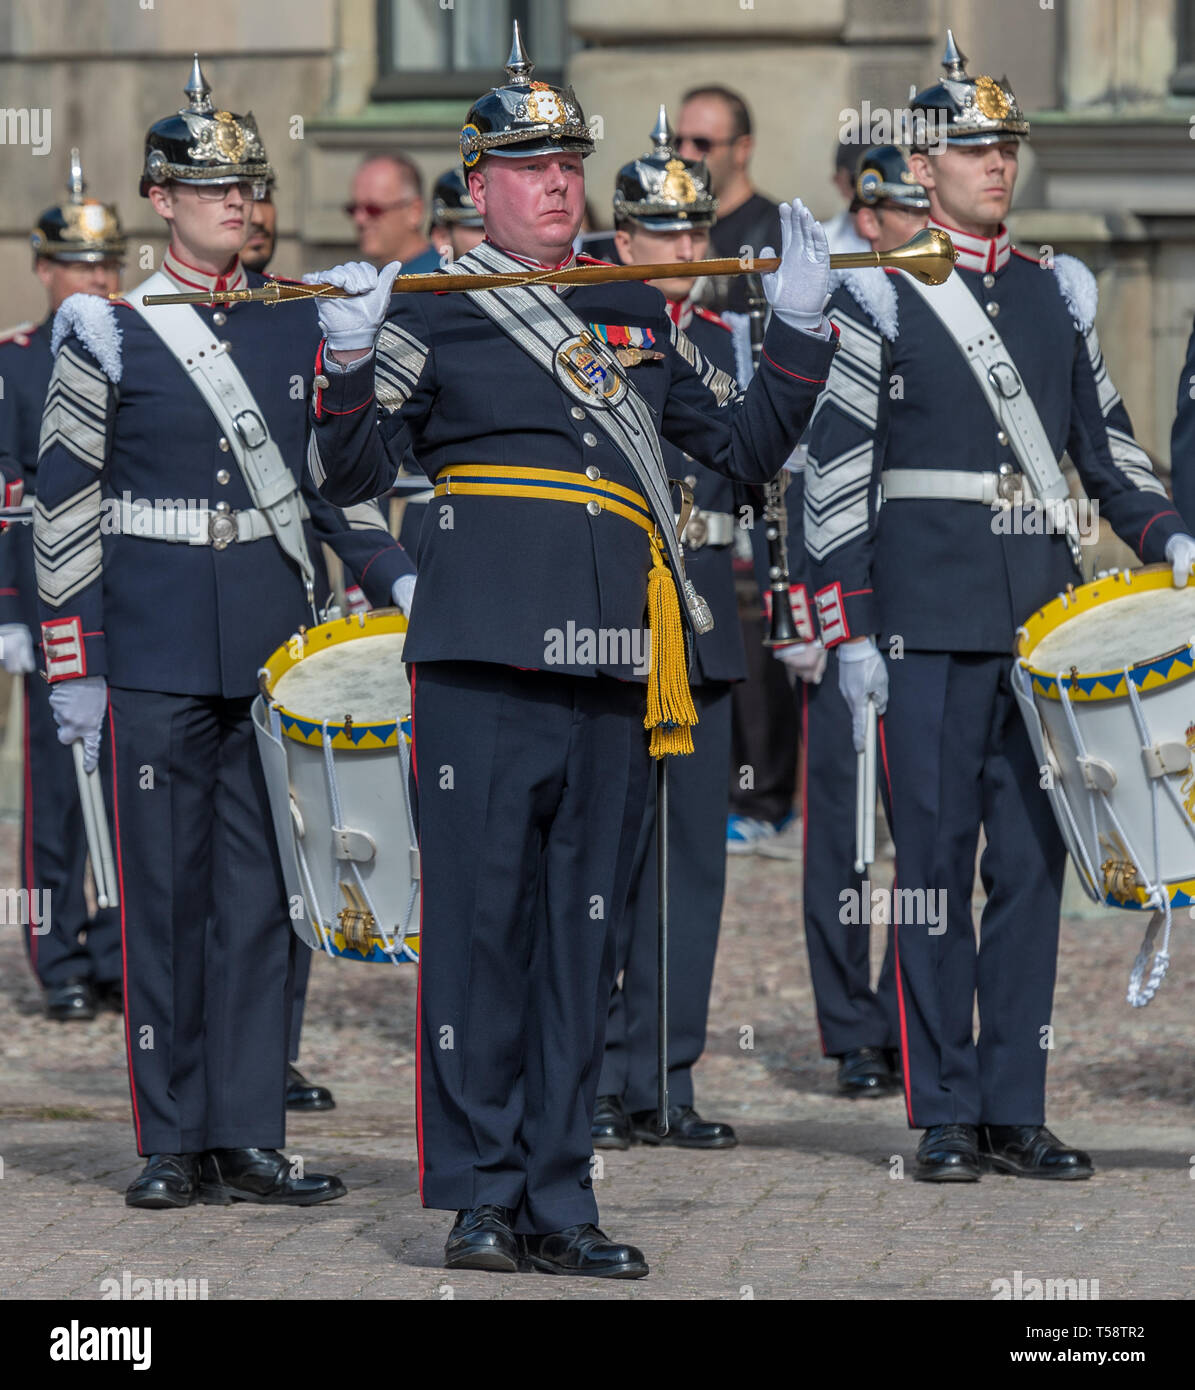 El tambor de regimiento principales y percusionistas de la Real Armada Sueca banco vestido ceremonial uniformes y cascos pickelhaube negro Foto de stock